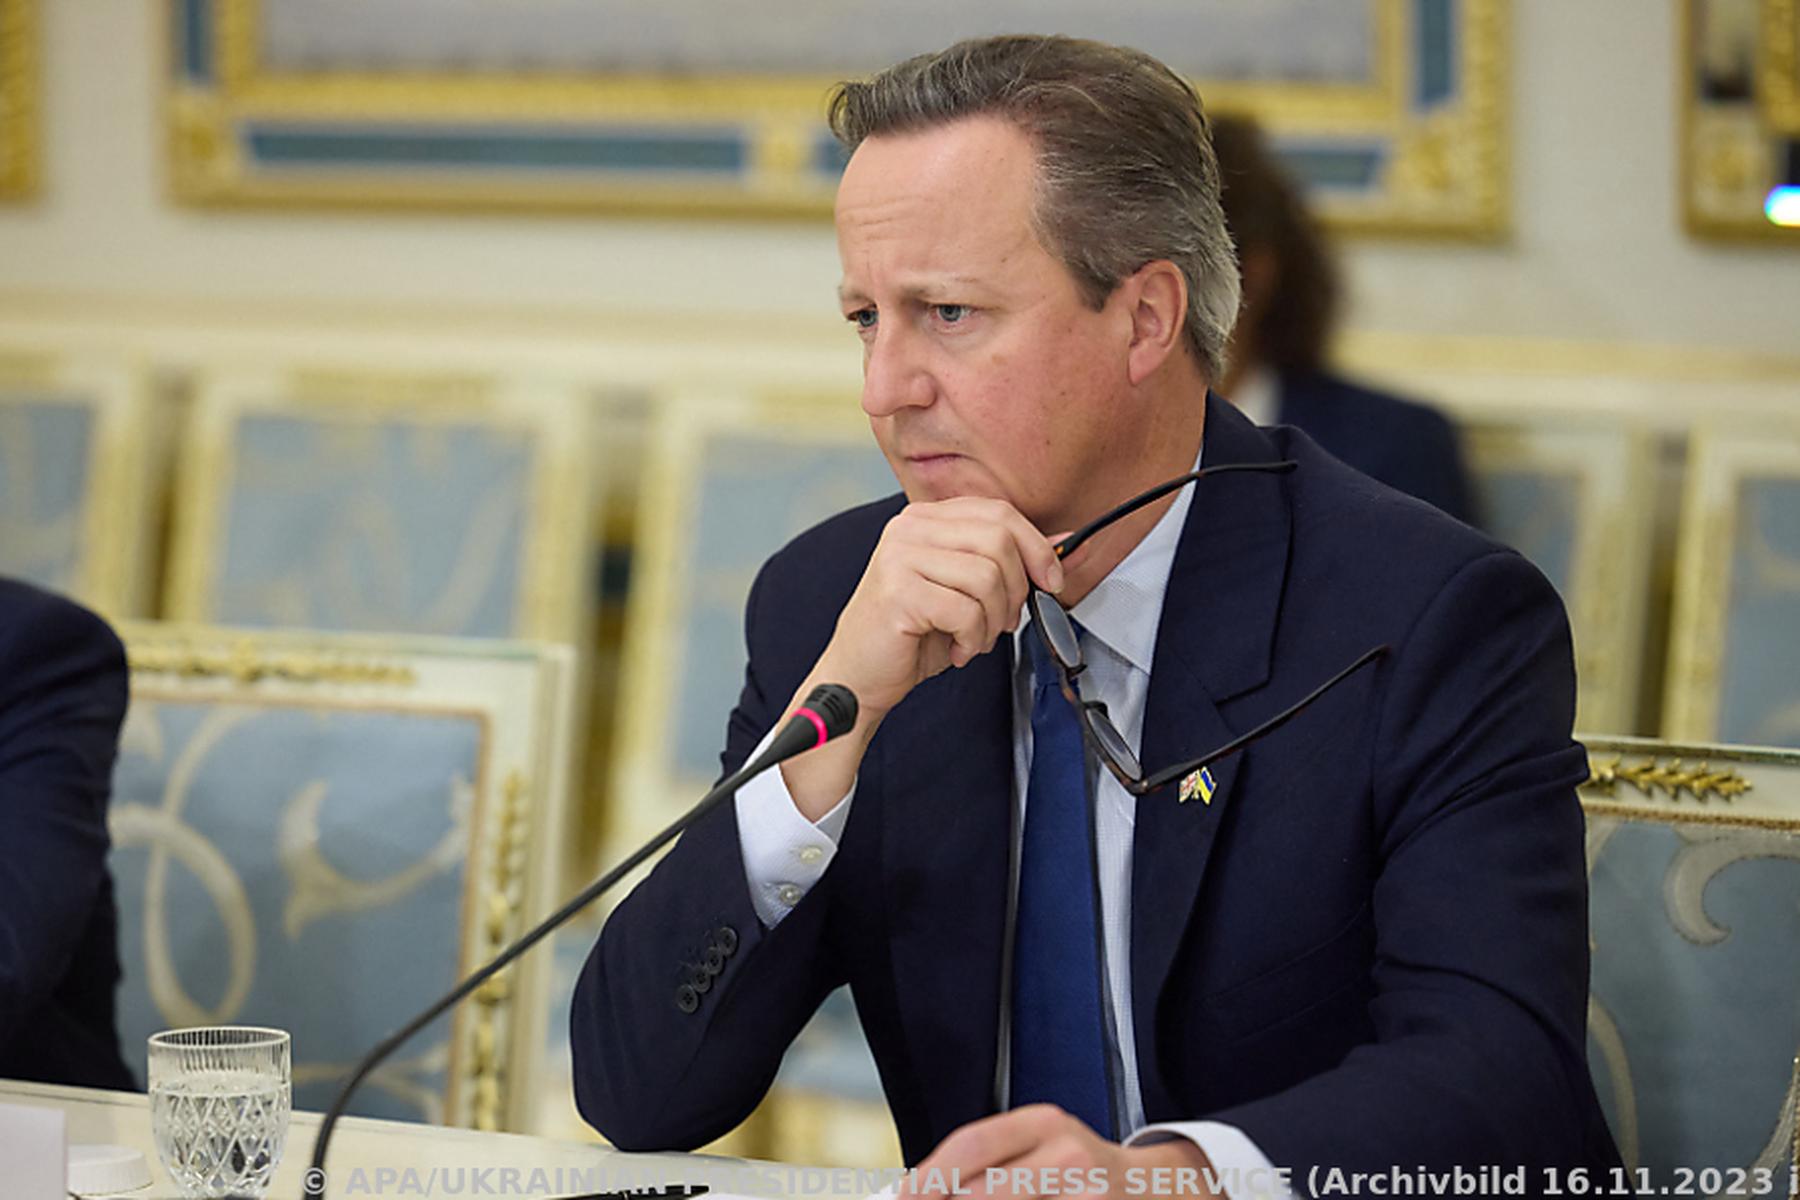 Not in Gaza: Britischer Außenminister Cameron: Geduld mit Israel muss abnehmen